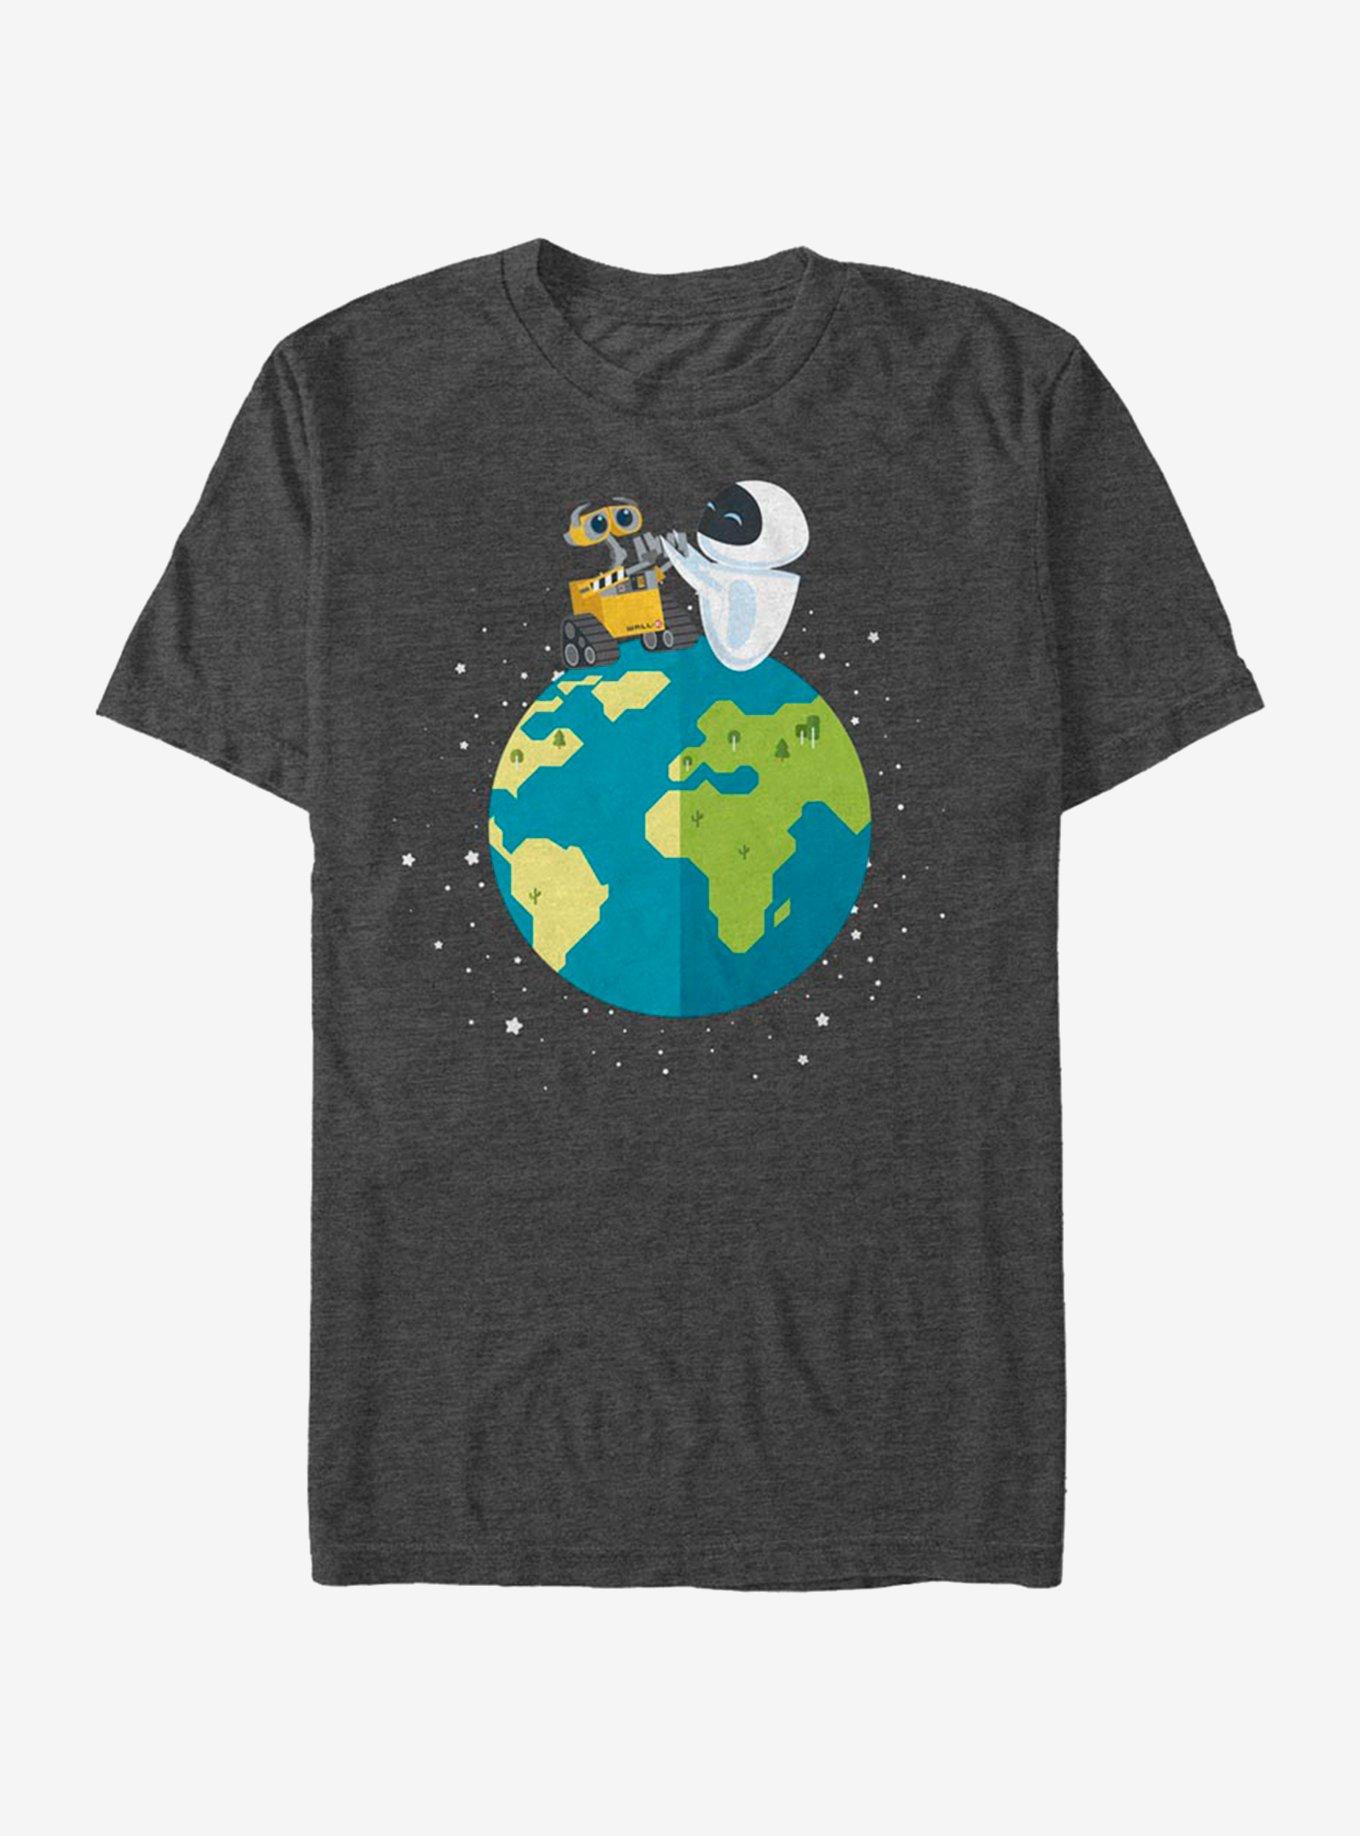 Disney Pixar Wall-E World Peace T-Shirt, CHAR HTR, hi-res